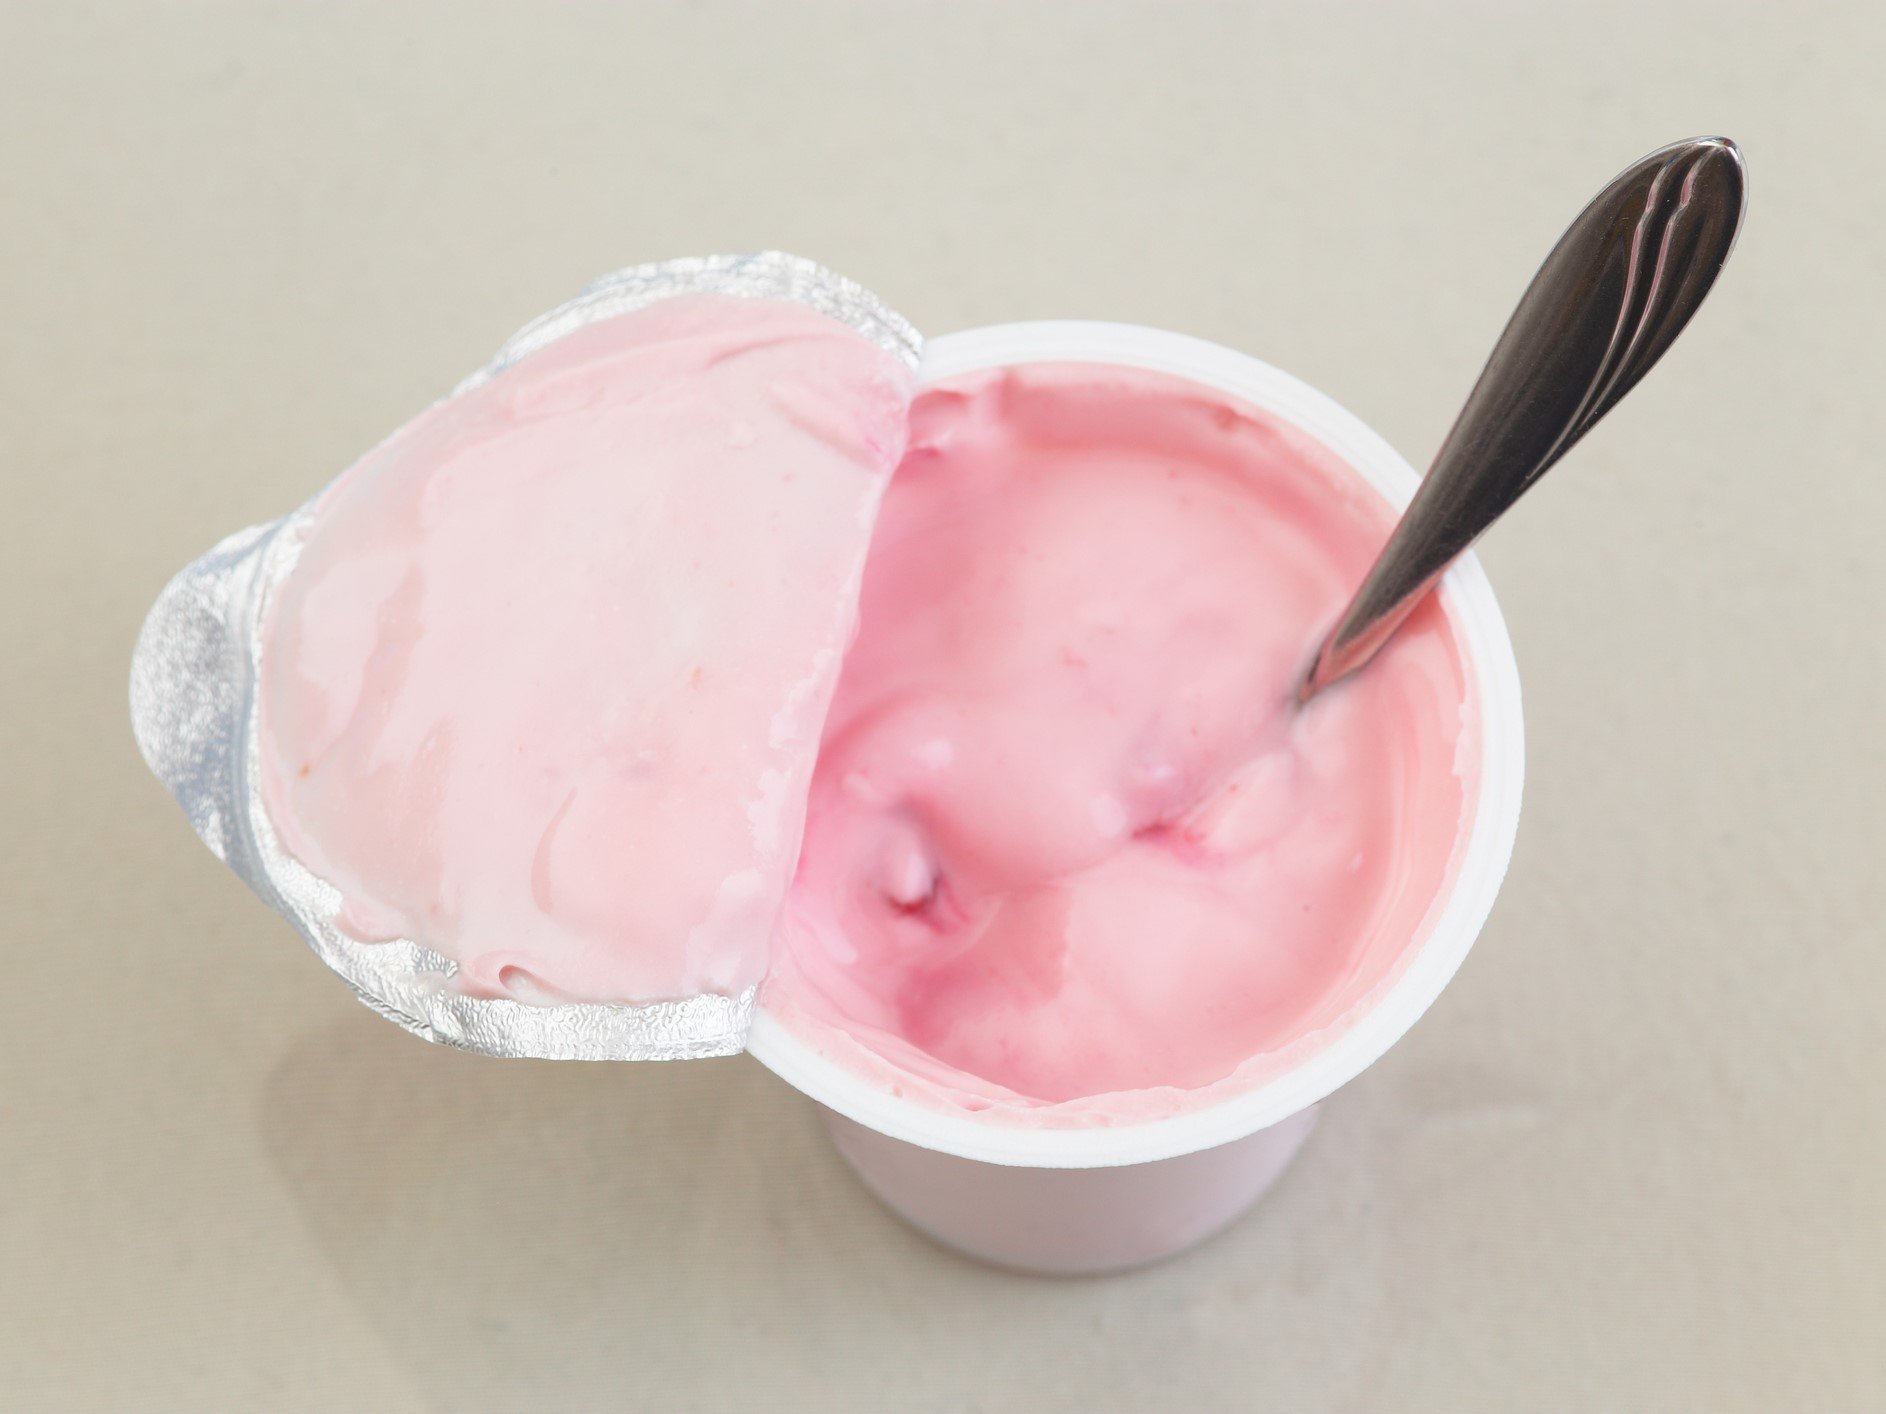 Beragam Manfaat Penting dan Fungsi Yoghurt Bagi Kesehatan